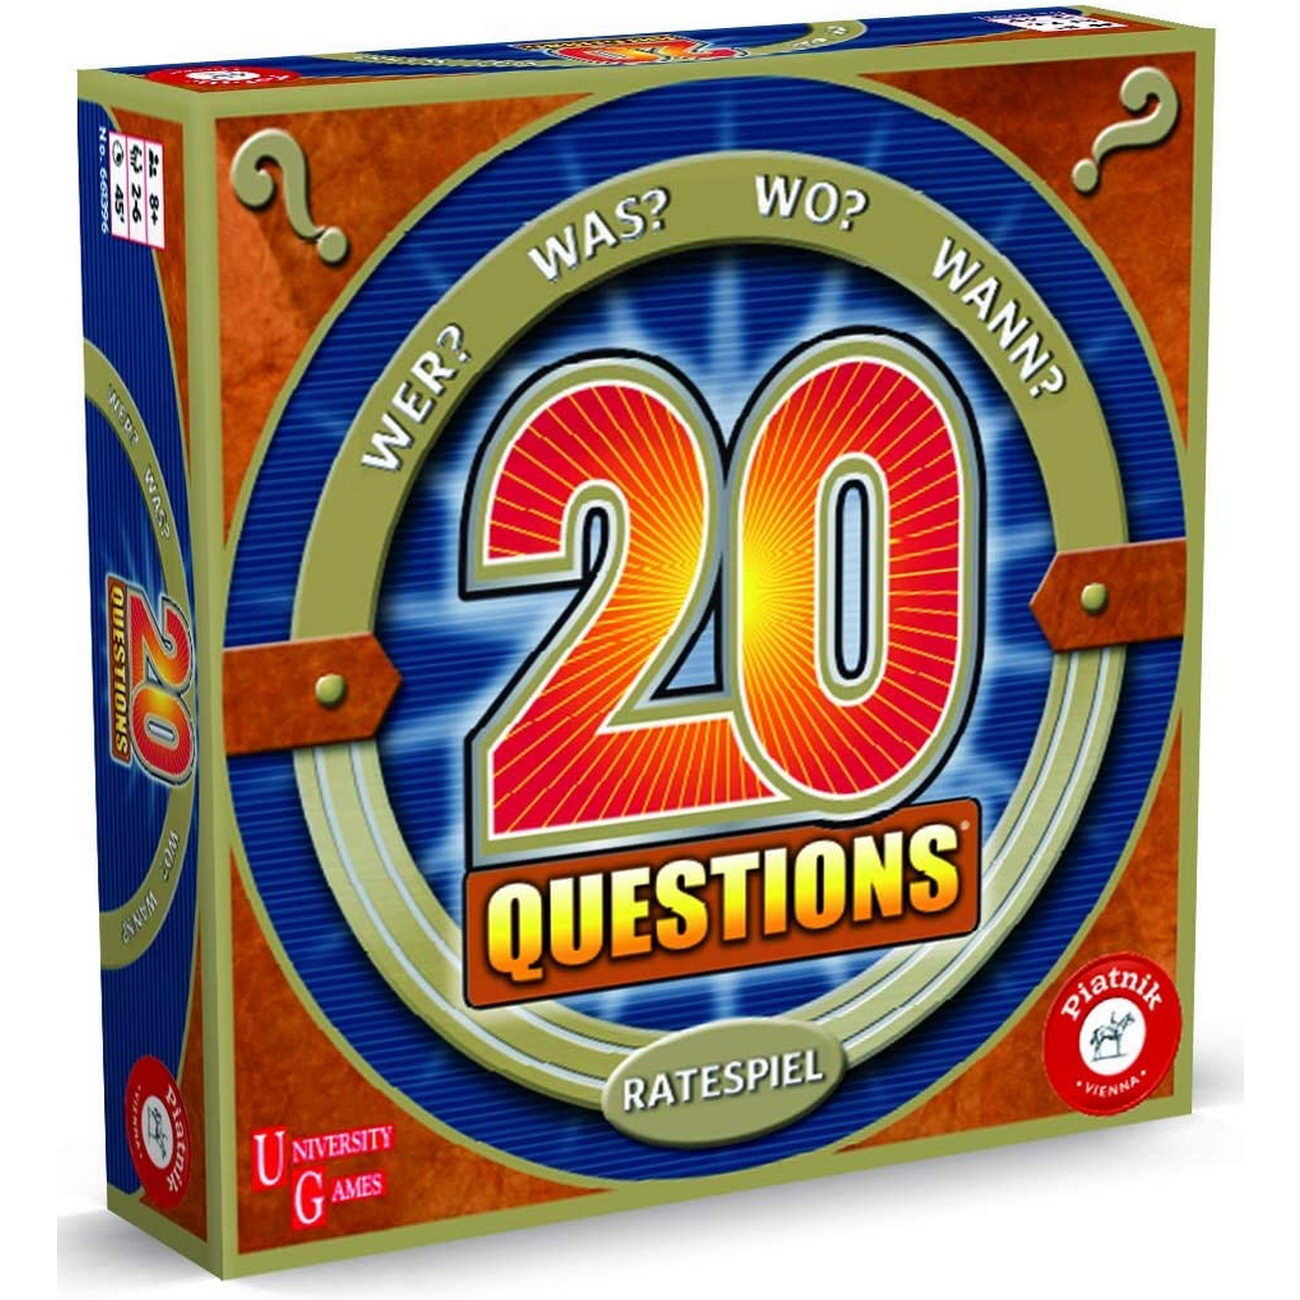 20 Questions Ratespiel (Piatnik 6613)